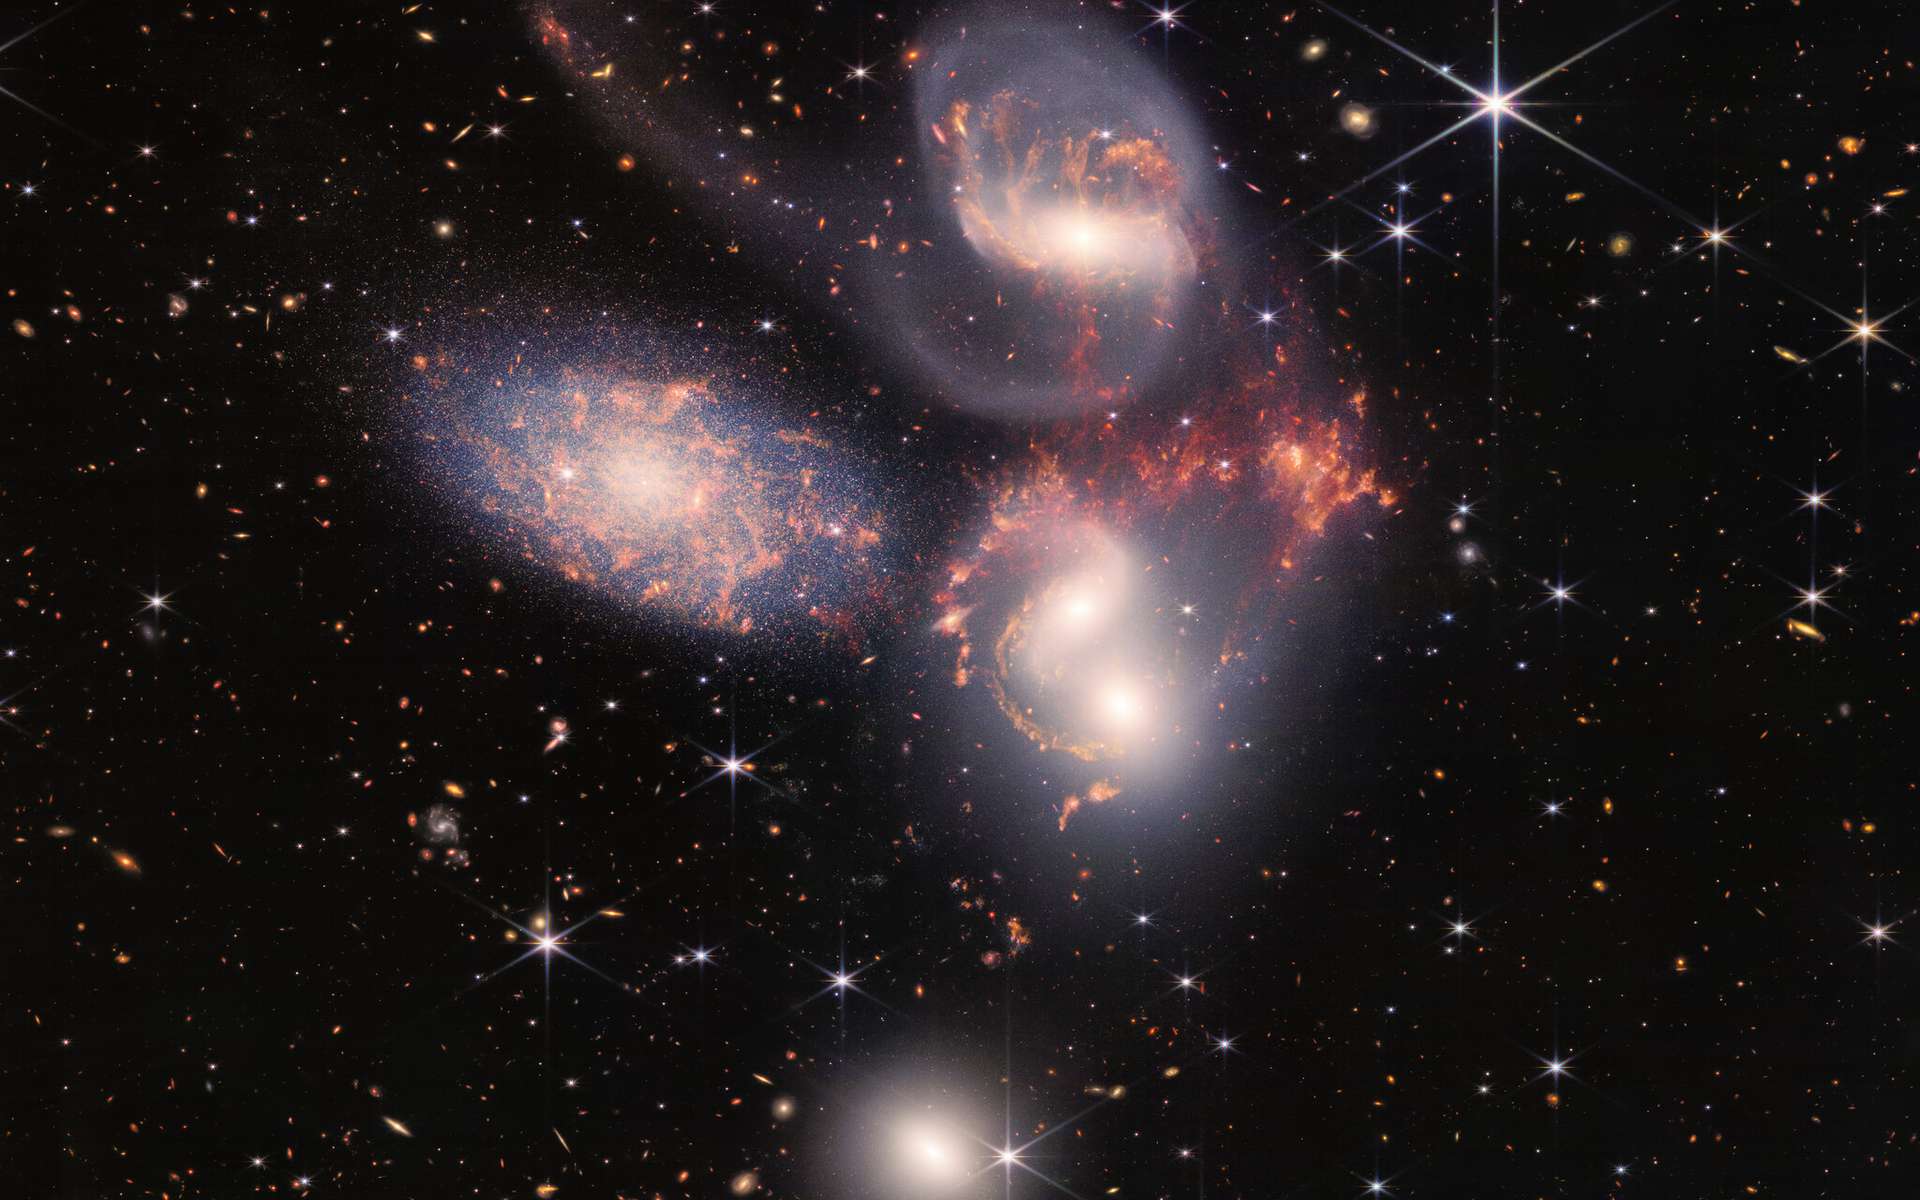 Le Quintette de Stephan en infrarouge vu par le télescope James-Webb, ici avec une image en fausses couleurs. © NASA, ESA, CSA, and STScI